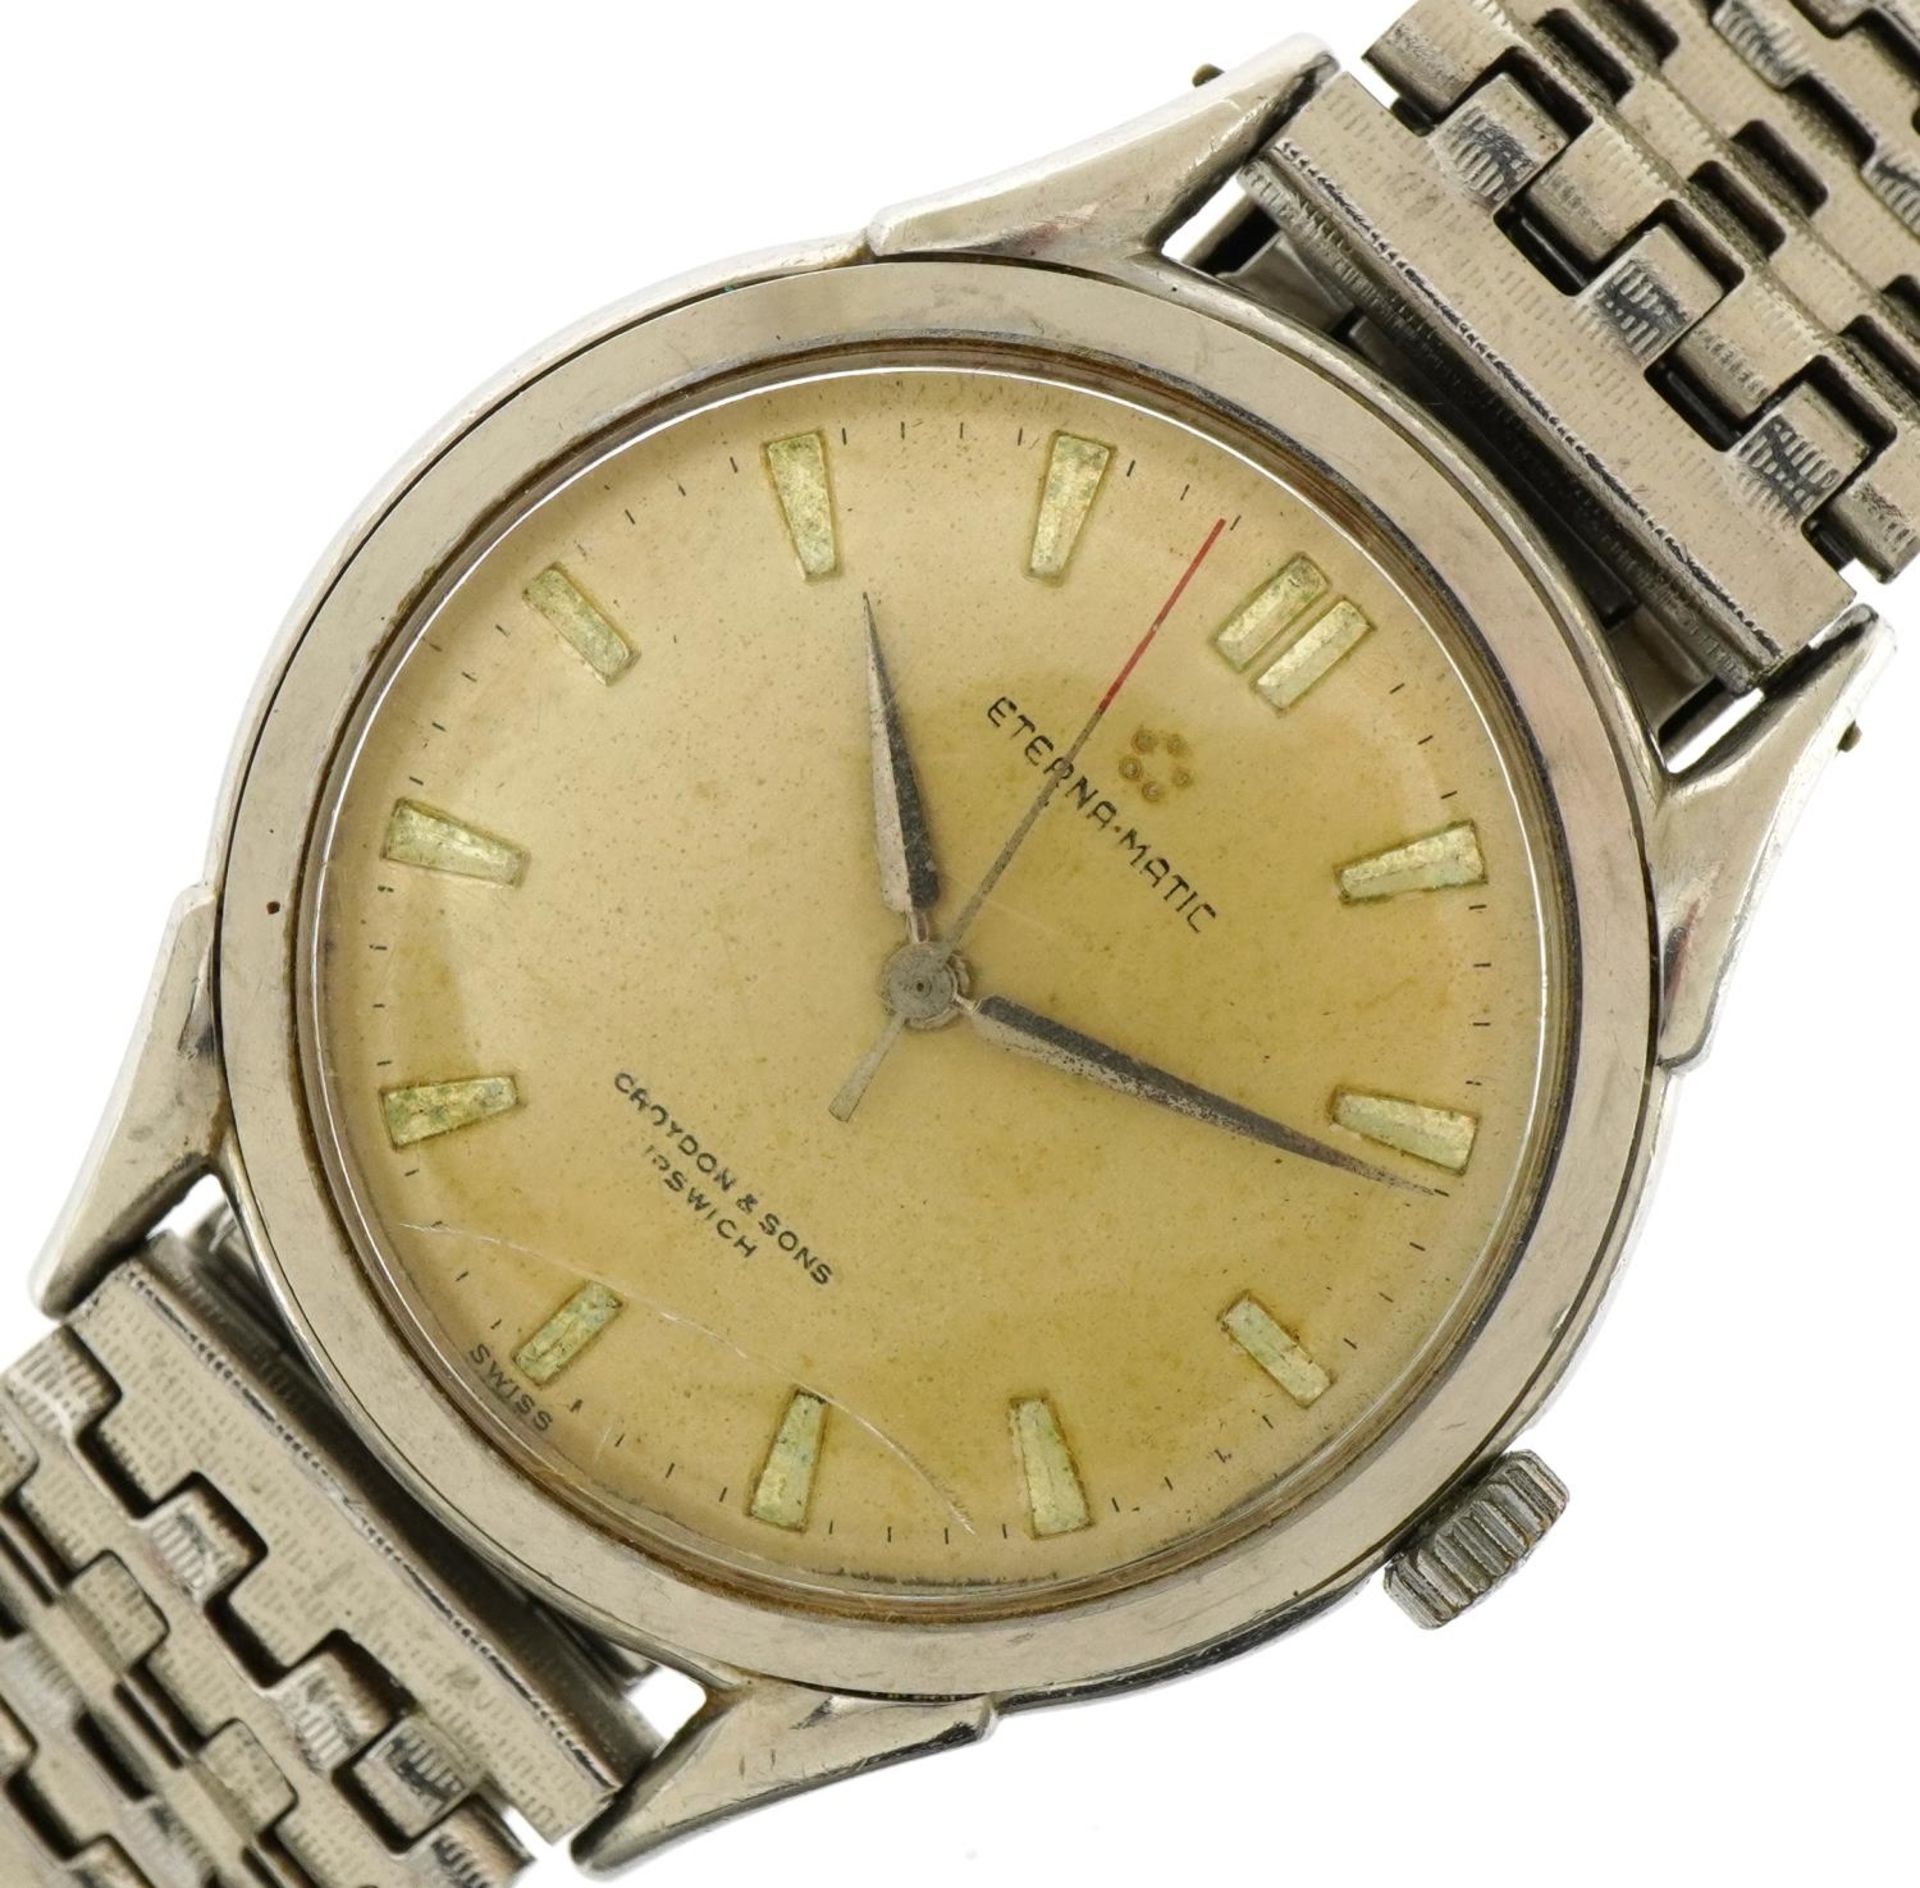 Gentlemen's Eterna Matic gentleman's automatic wristwatch, the case 36mm in diameter